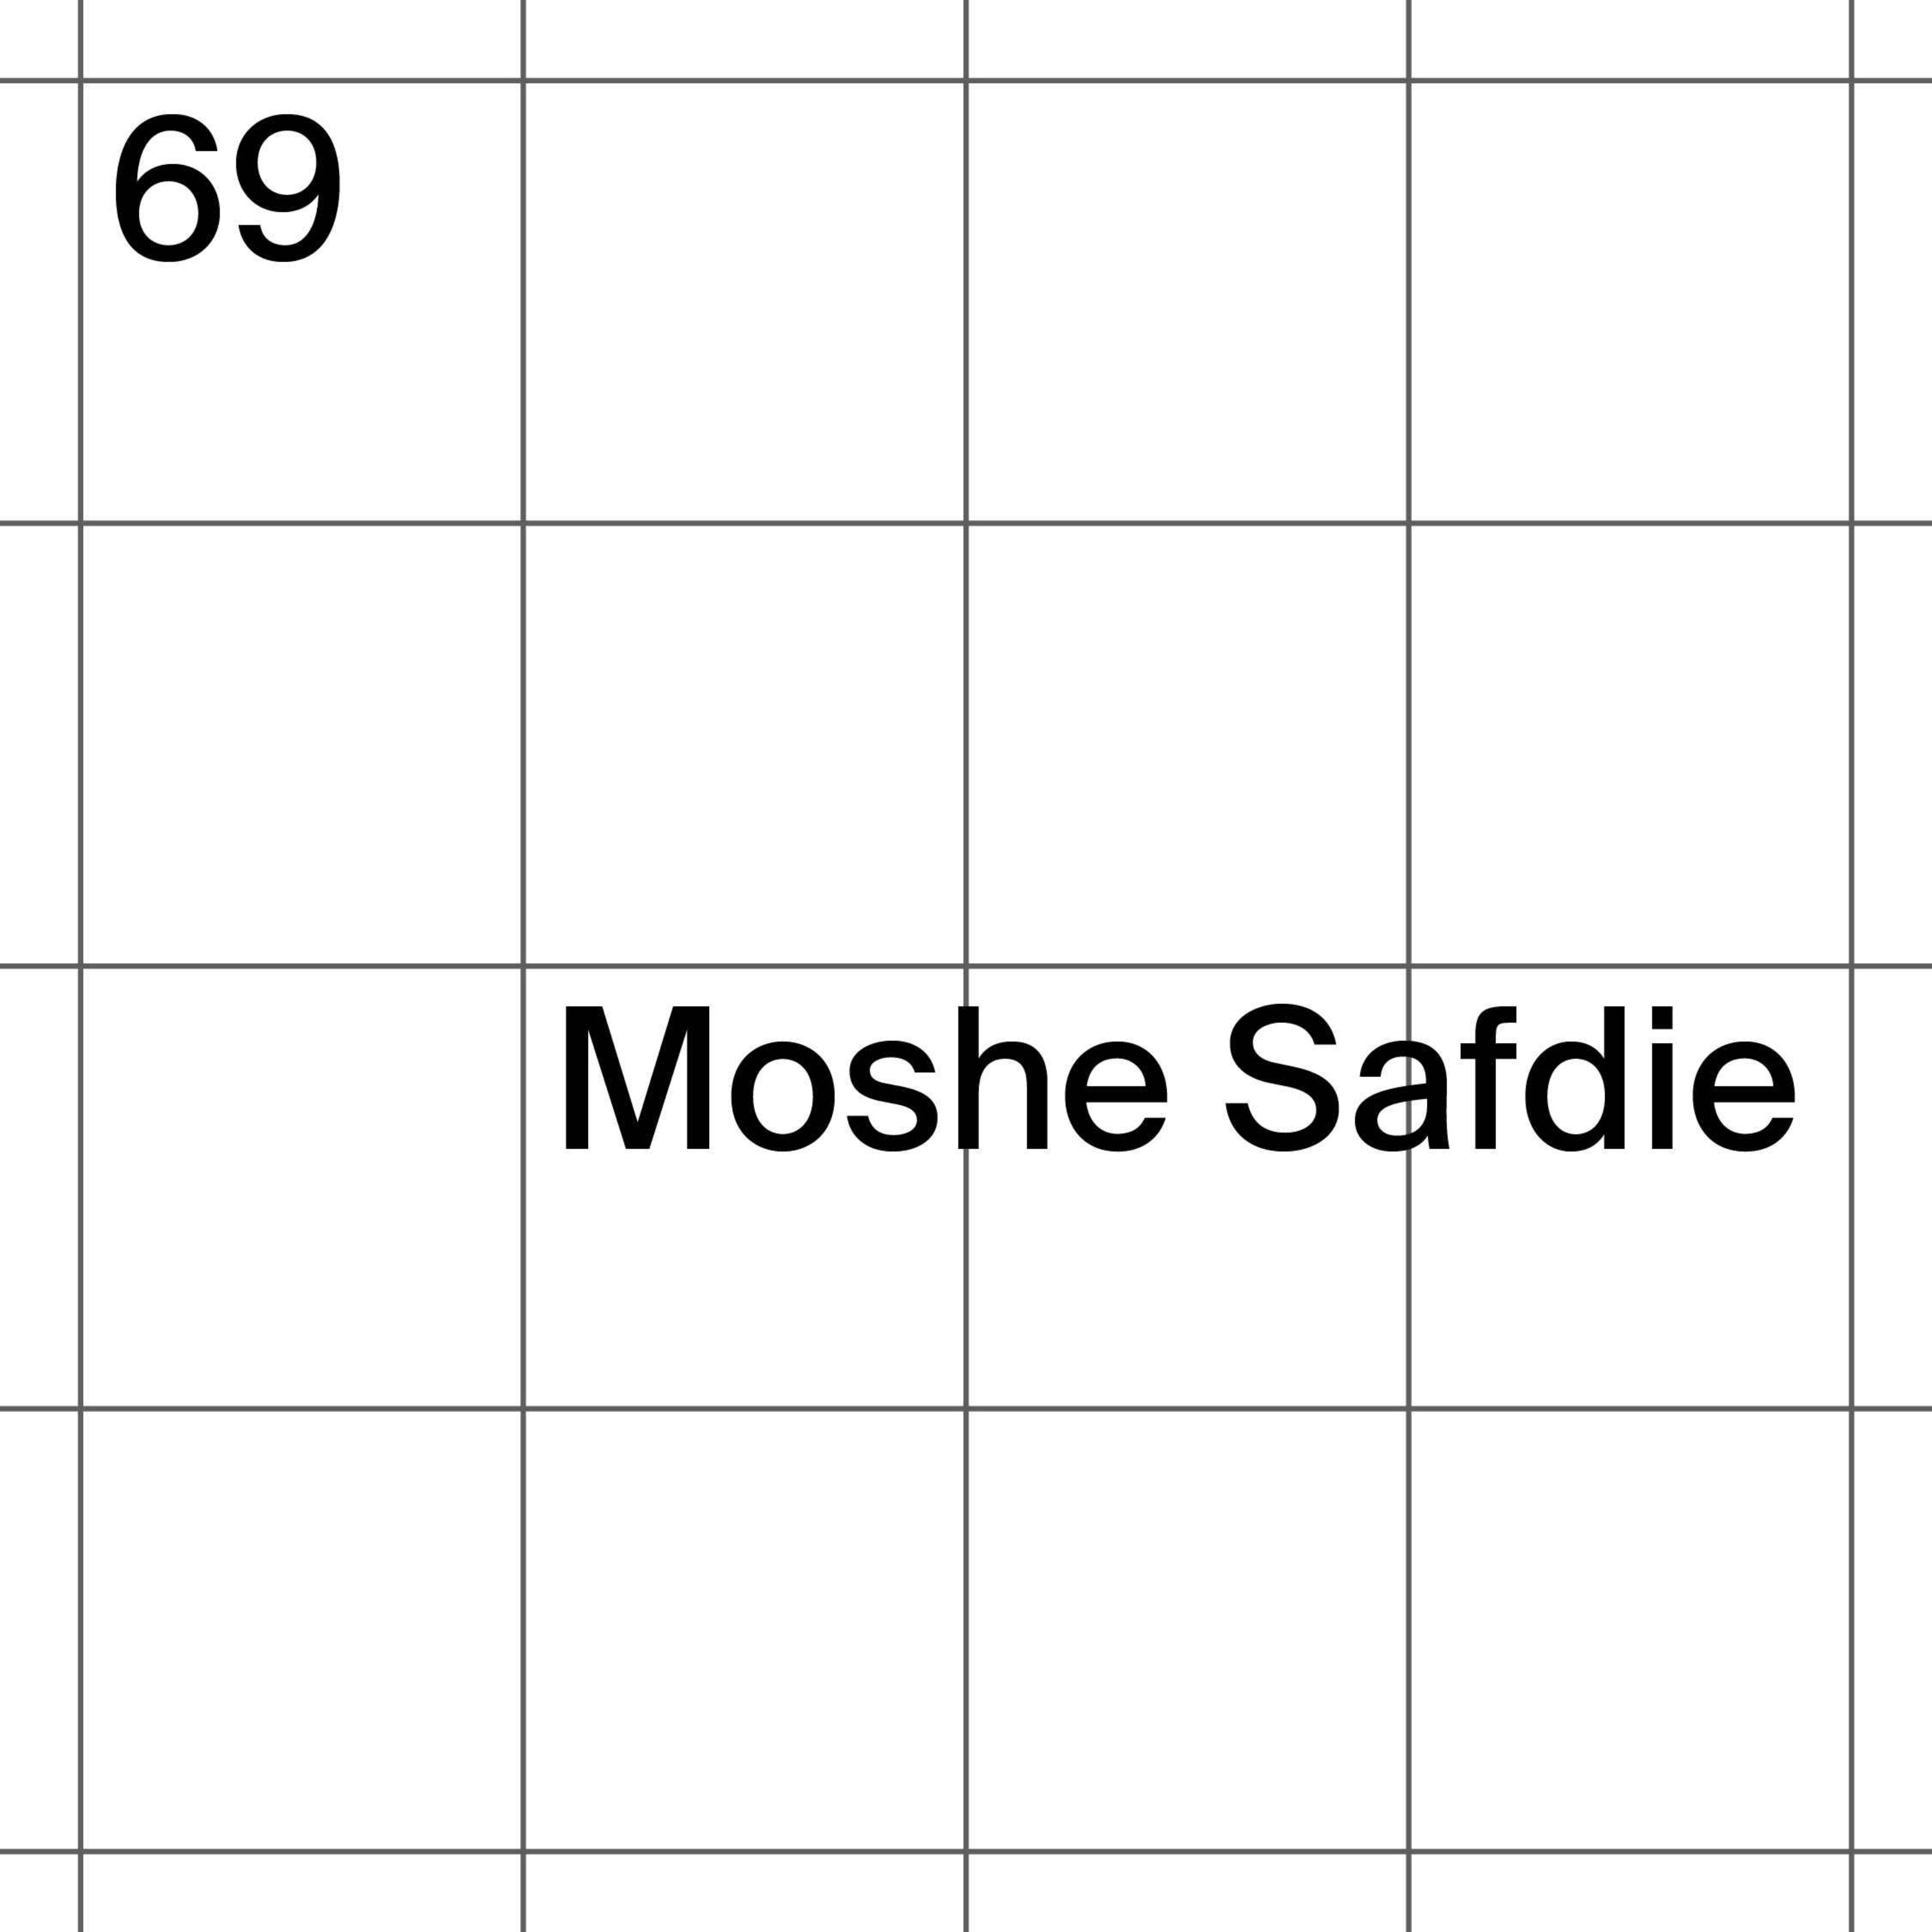 69: Moshe Safdie